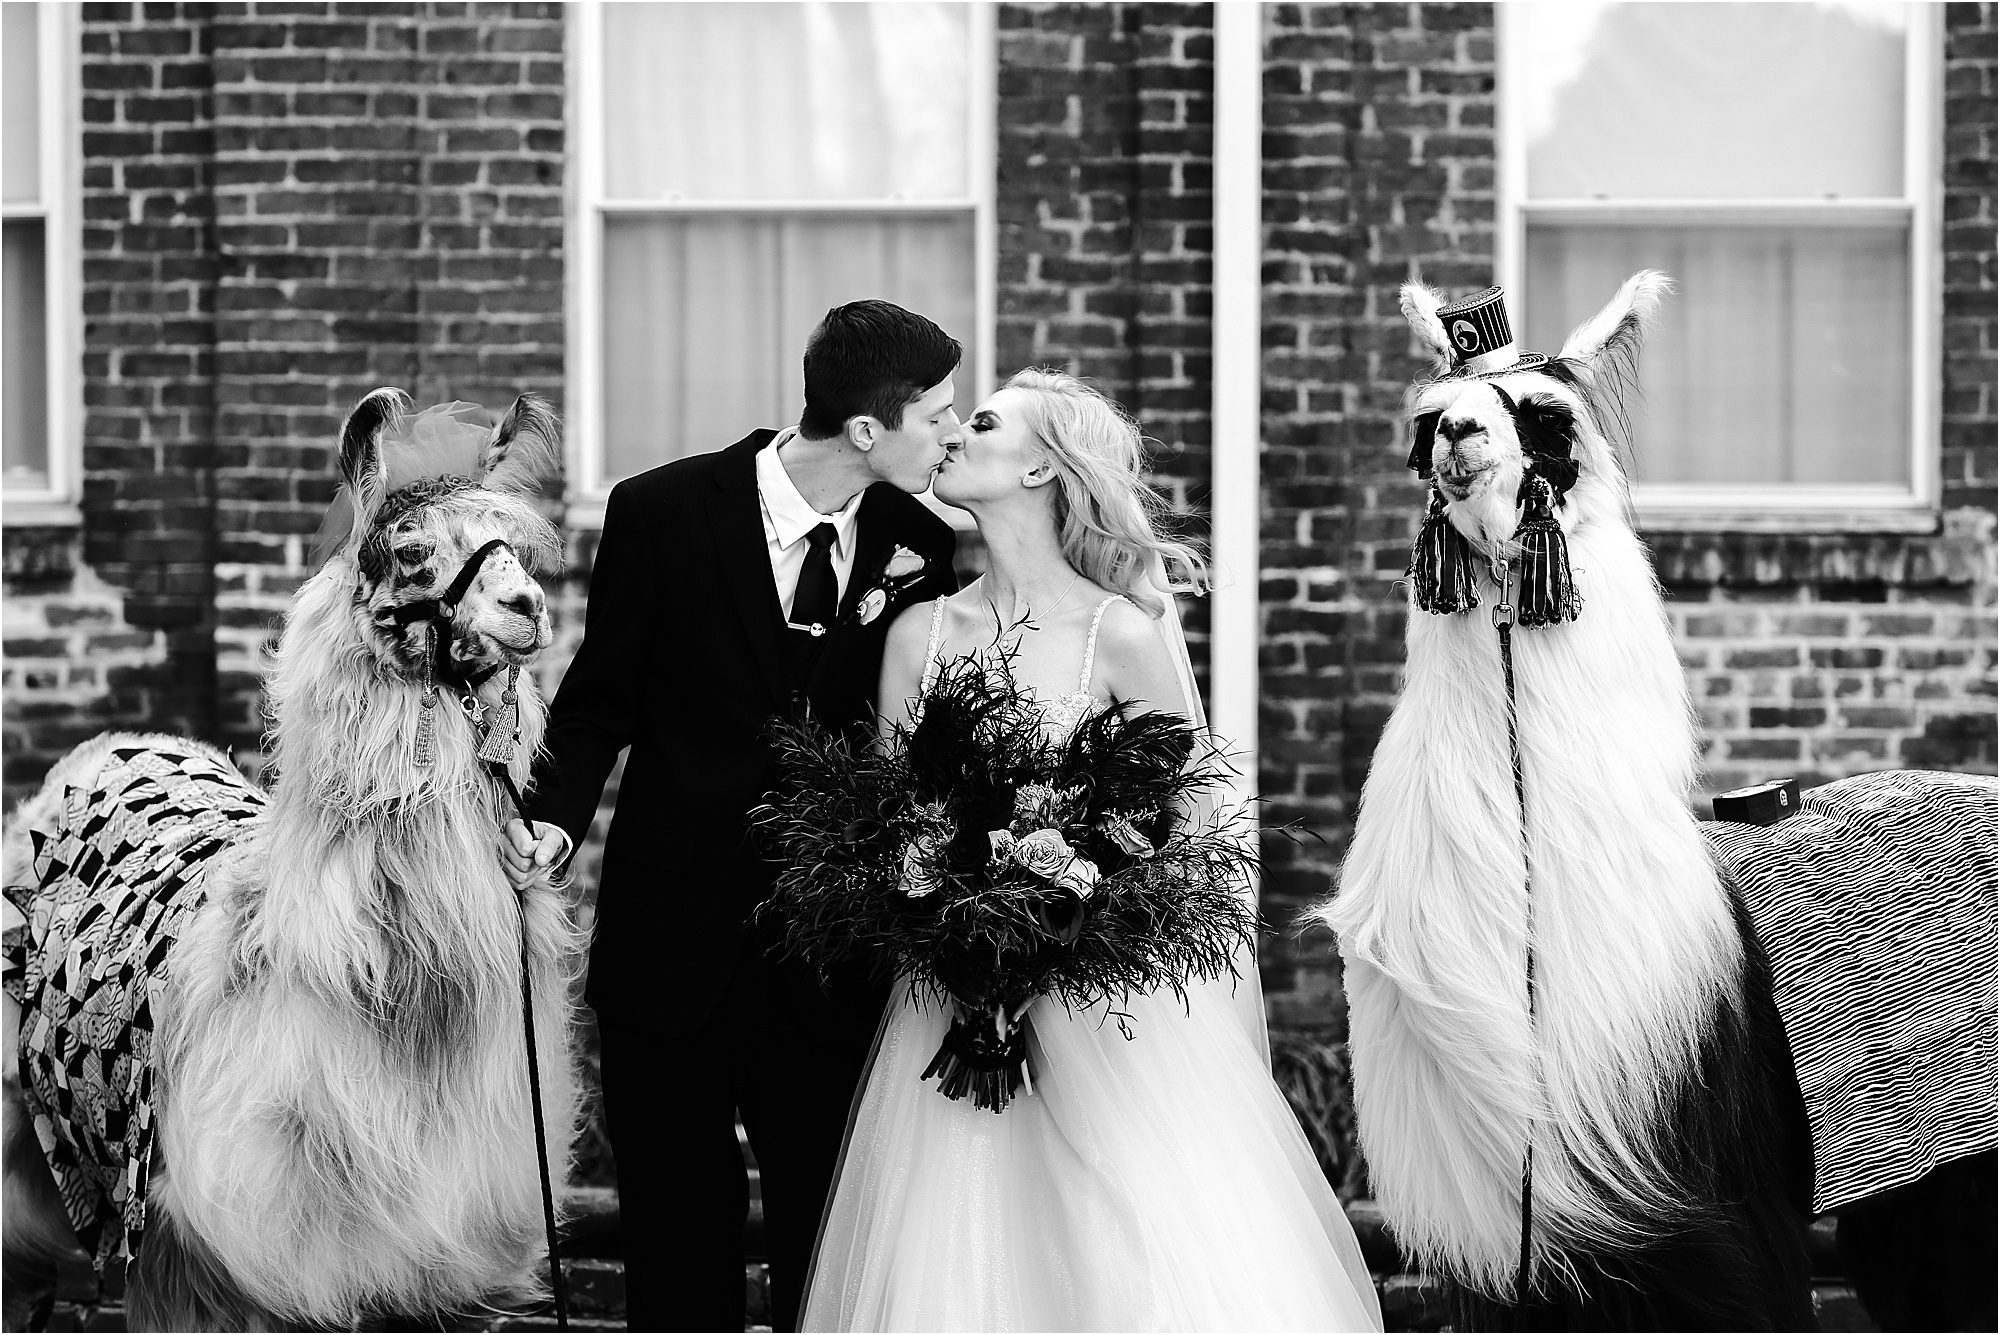 Llamas at a wedding